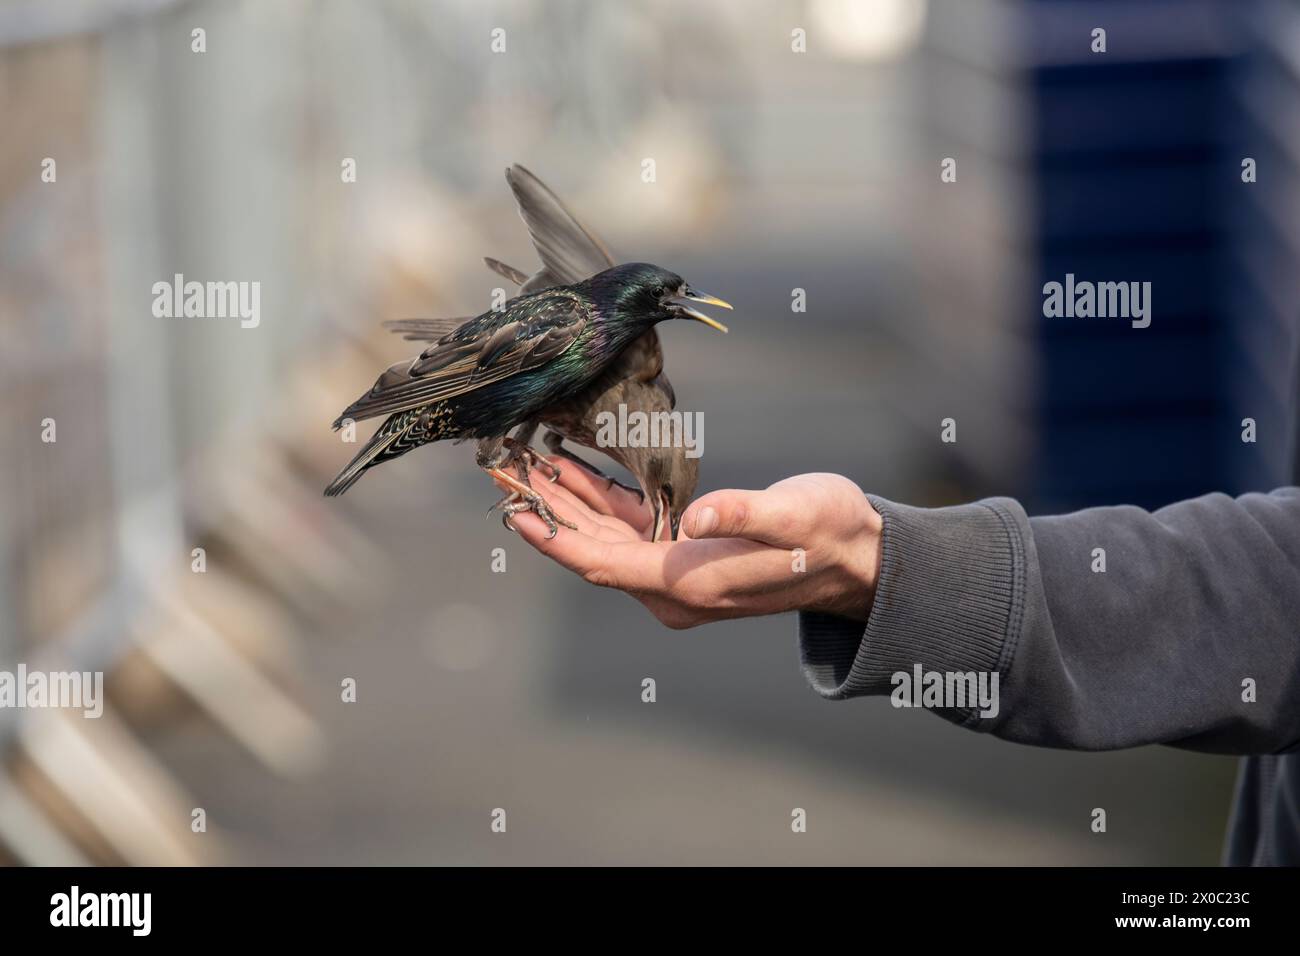 bras d'un homme nourrissant les oiseaux sauvages avec des graines, un peu de flou de mouvement Banque D'Images